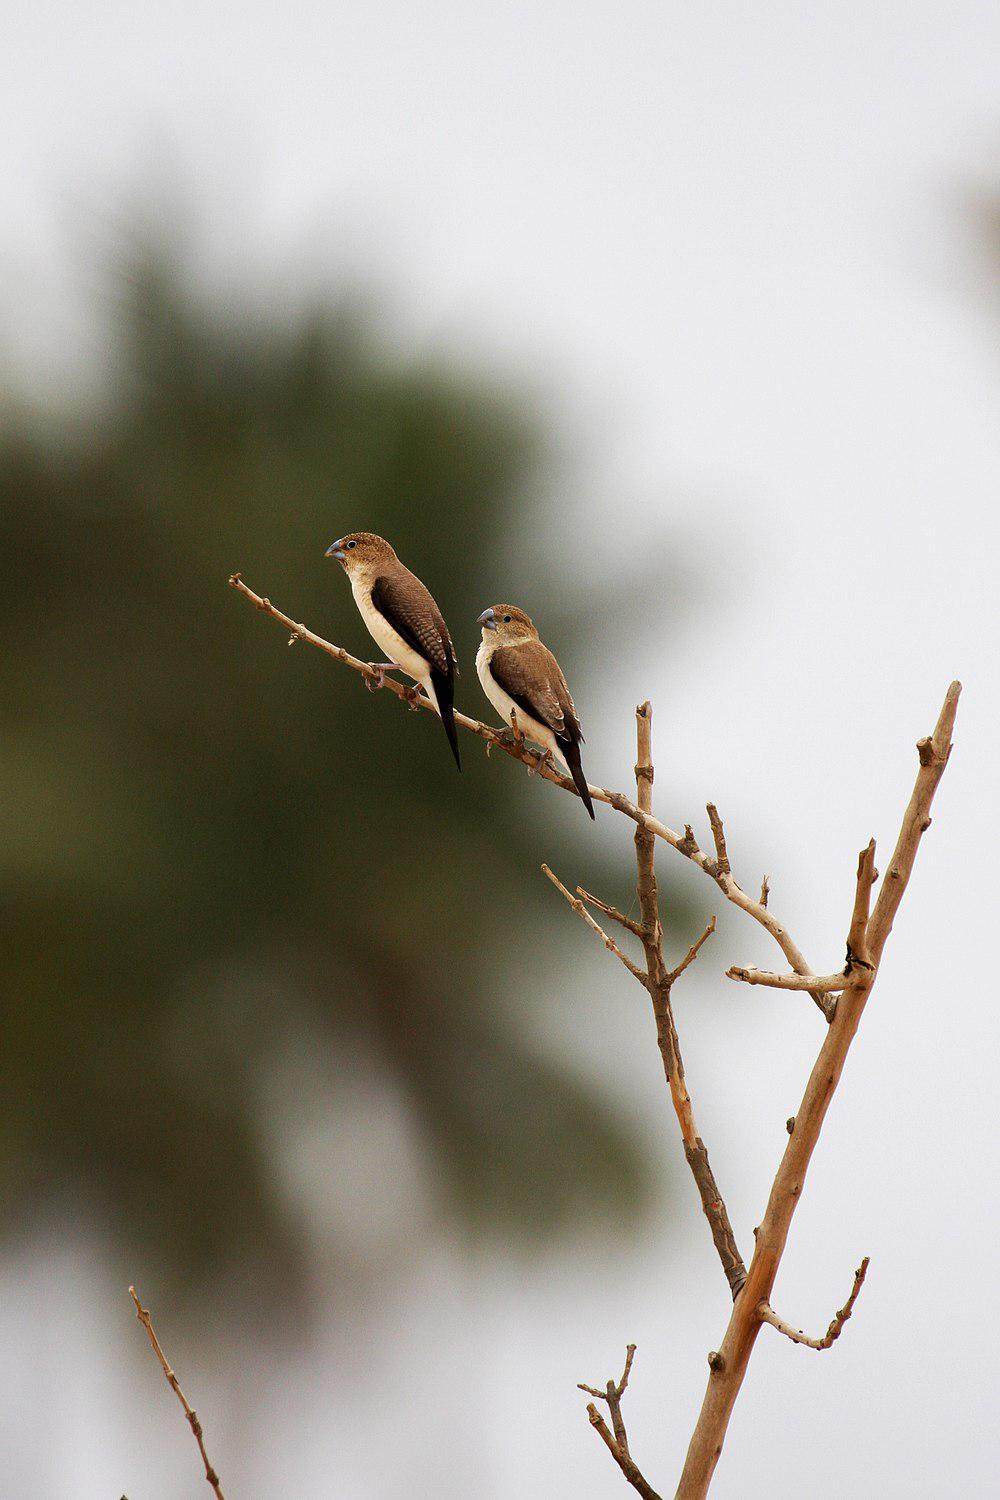 银嘴文鸟 / African Silverbill / Euodice cantans